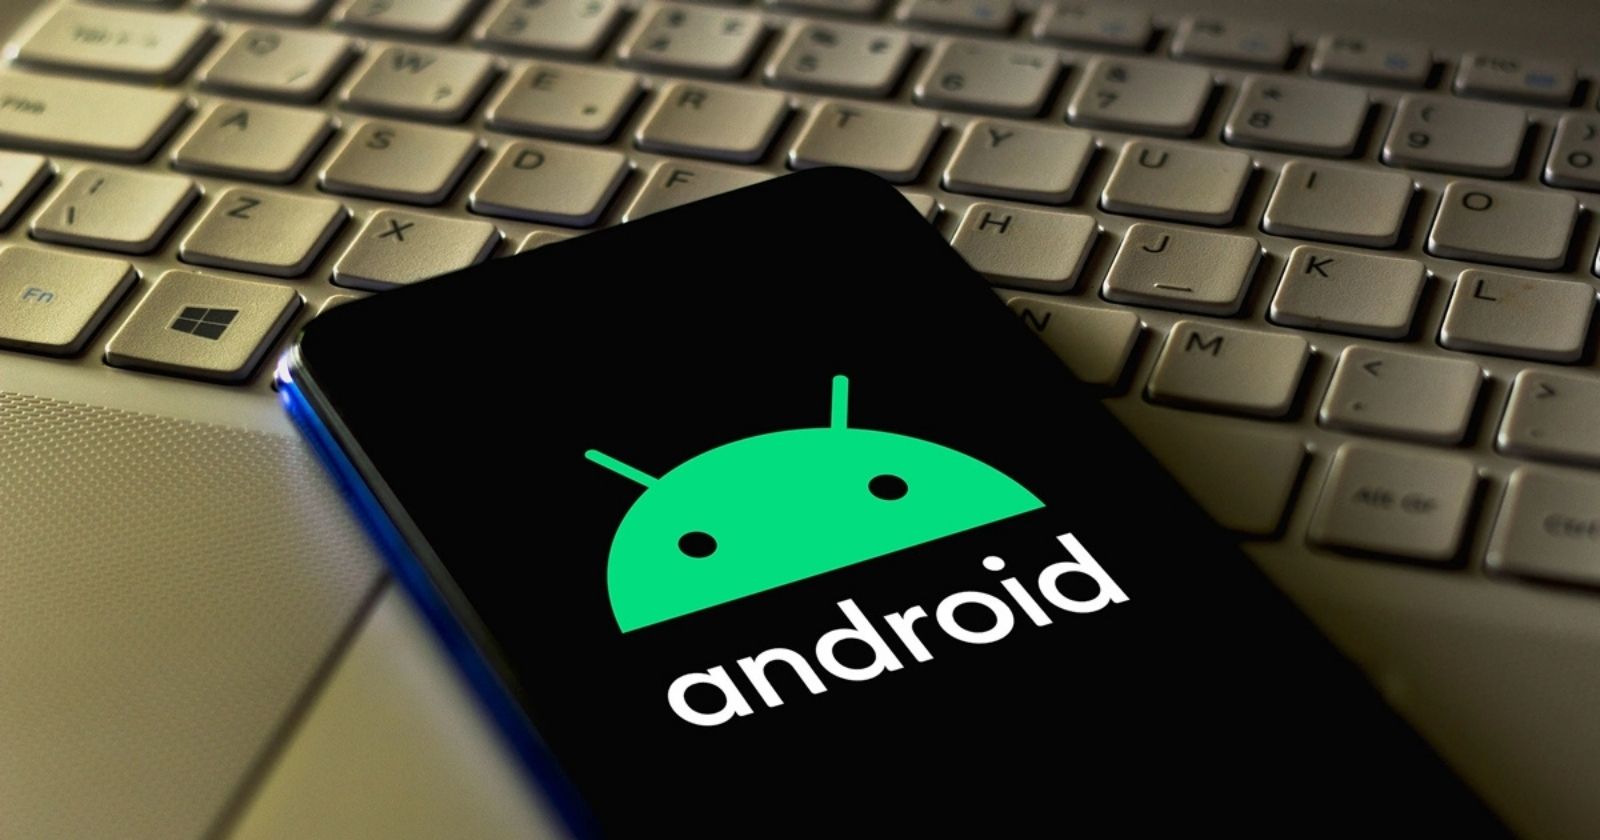 Kara göründü Android'lerdeki en büyük eksiklik tamamlanıyor!